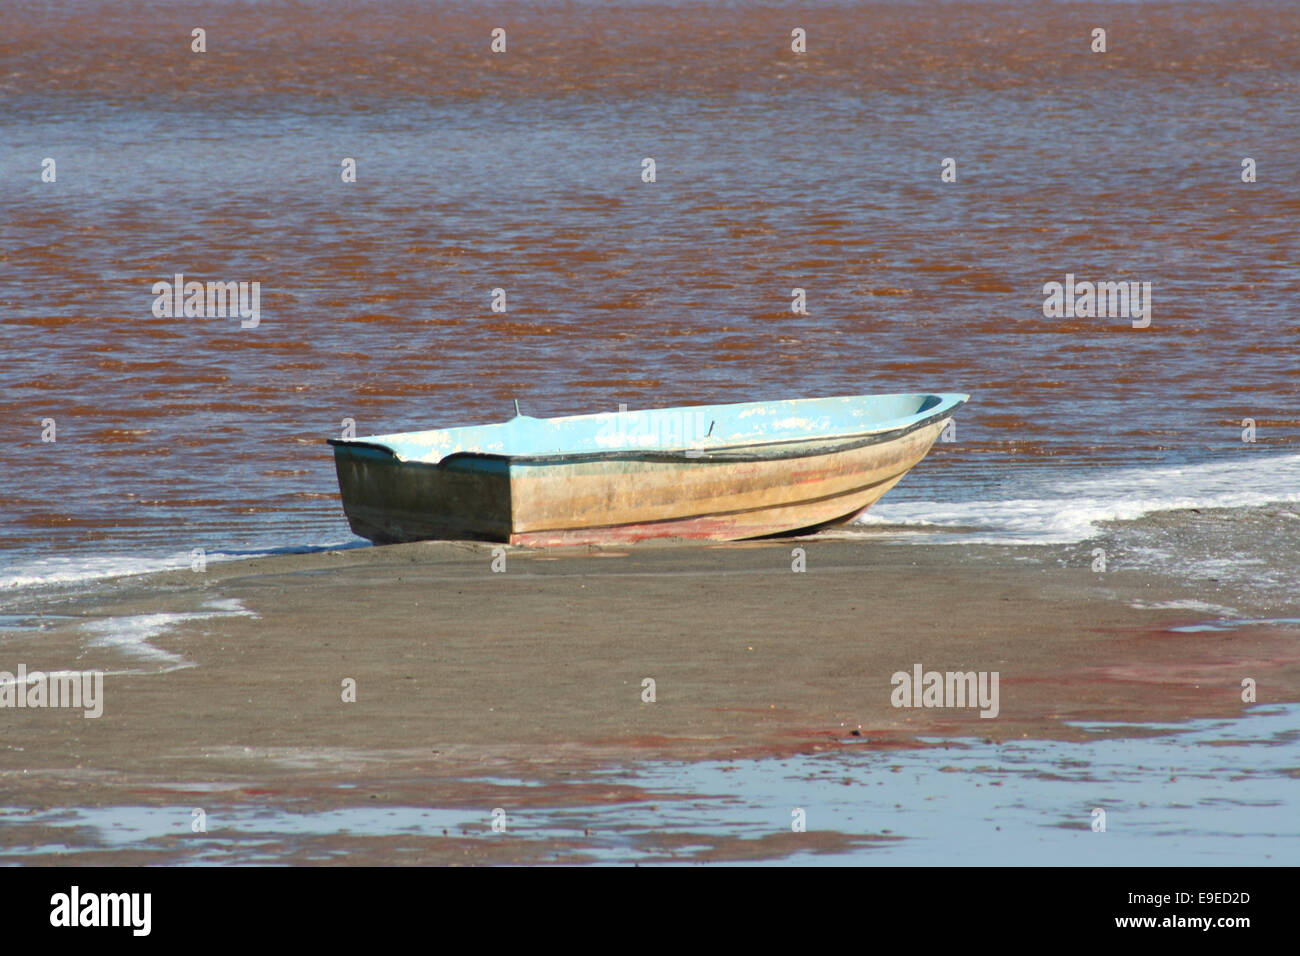 Barque sur le lac de sel dans l'île d'Imbros,Turquie Banque D'Images